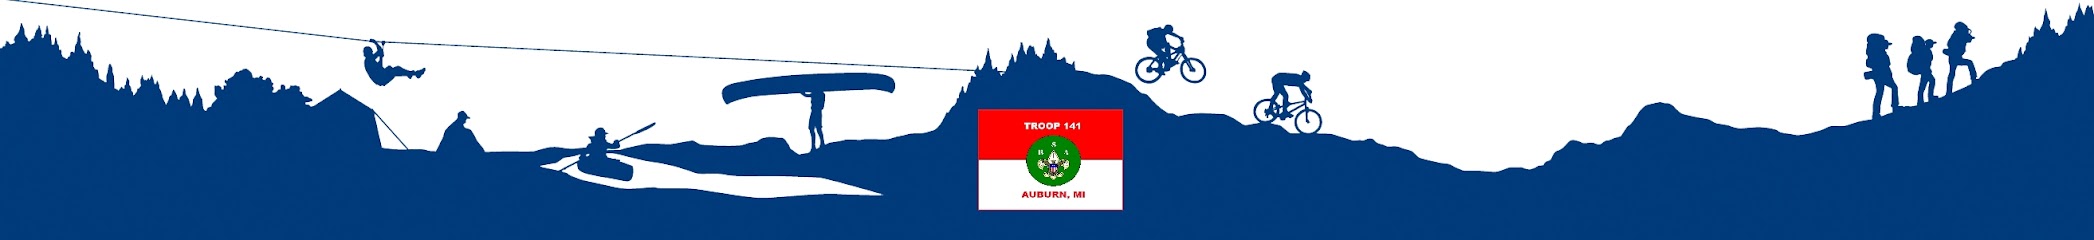 Auburn MI Boy Scouts Troop 141